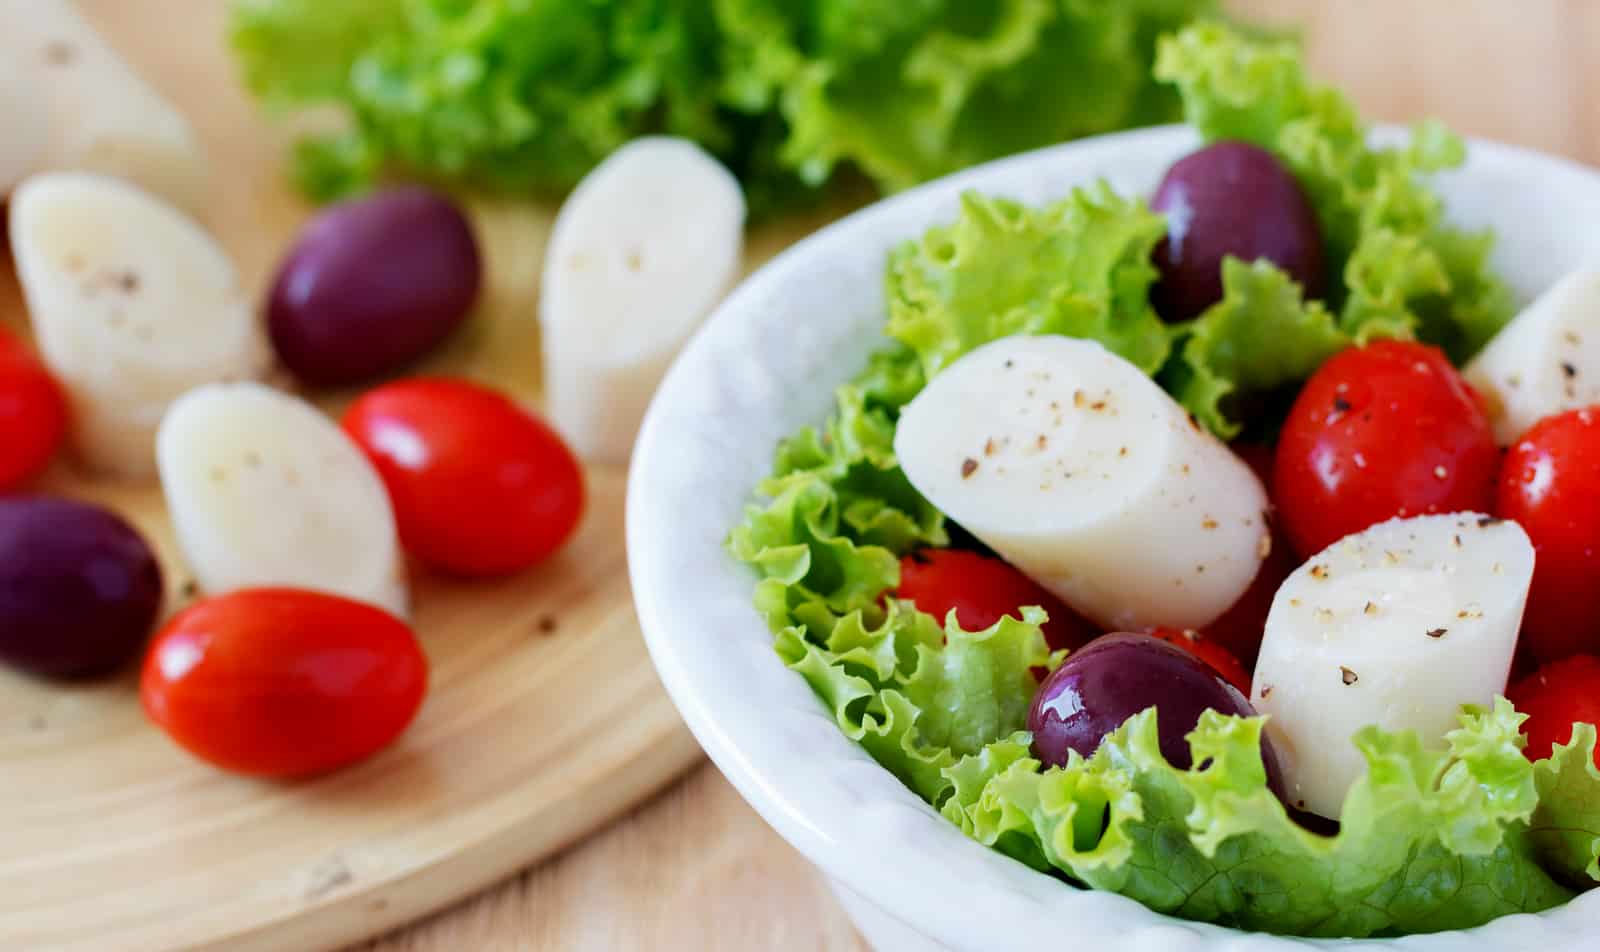 Vasilha branca com salada, contendo alface, tomate, azeitona e palmito